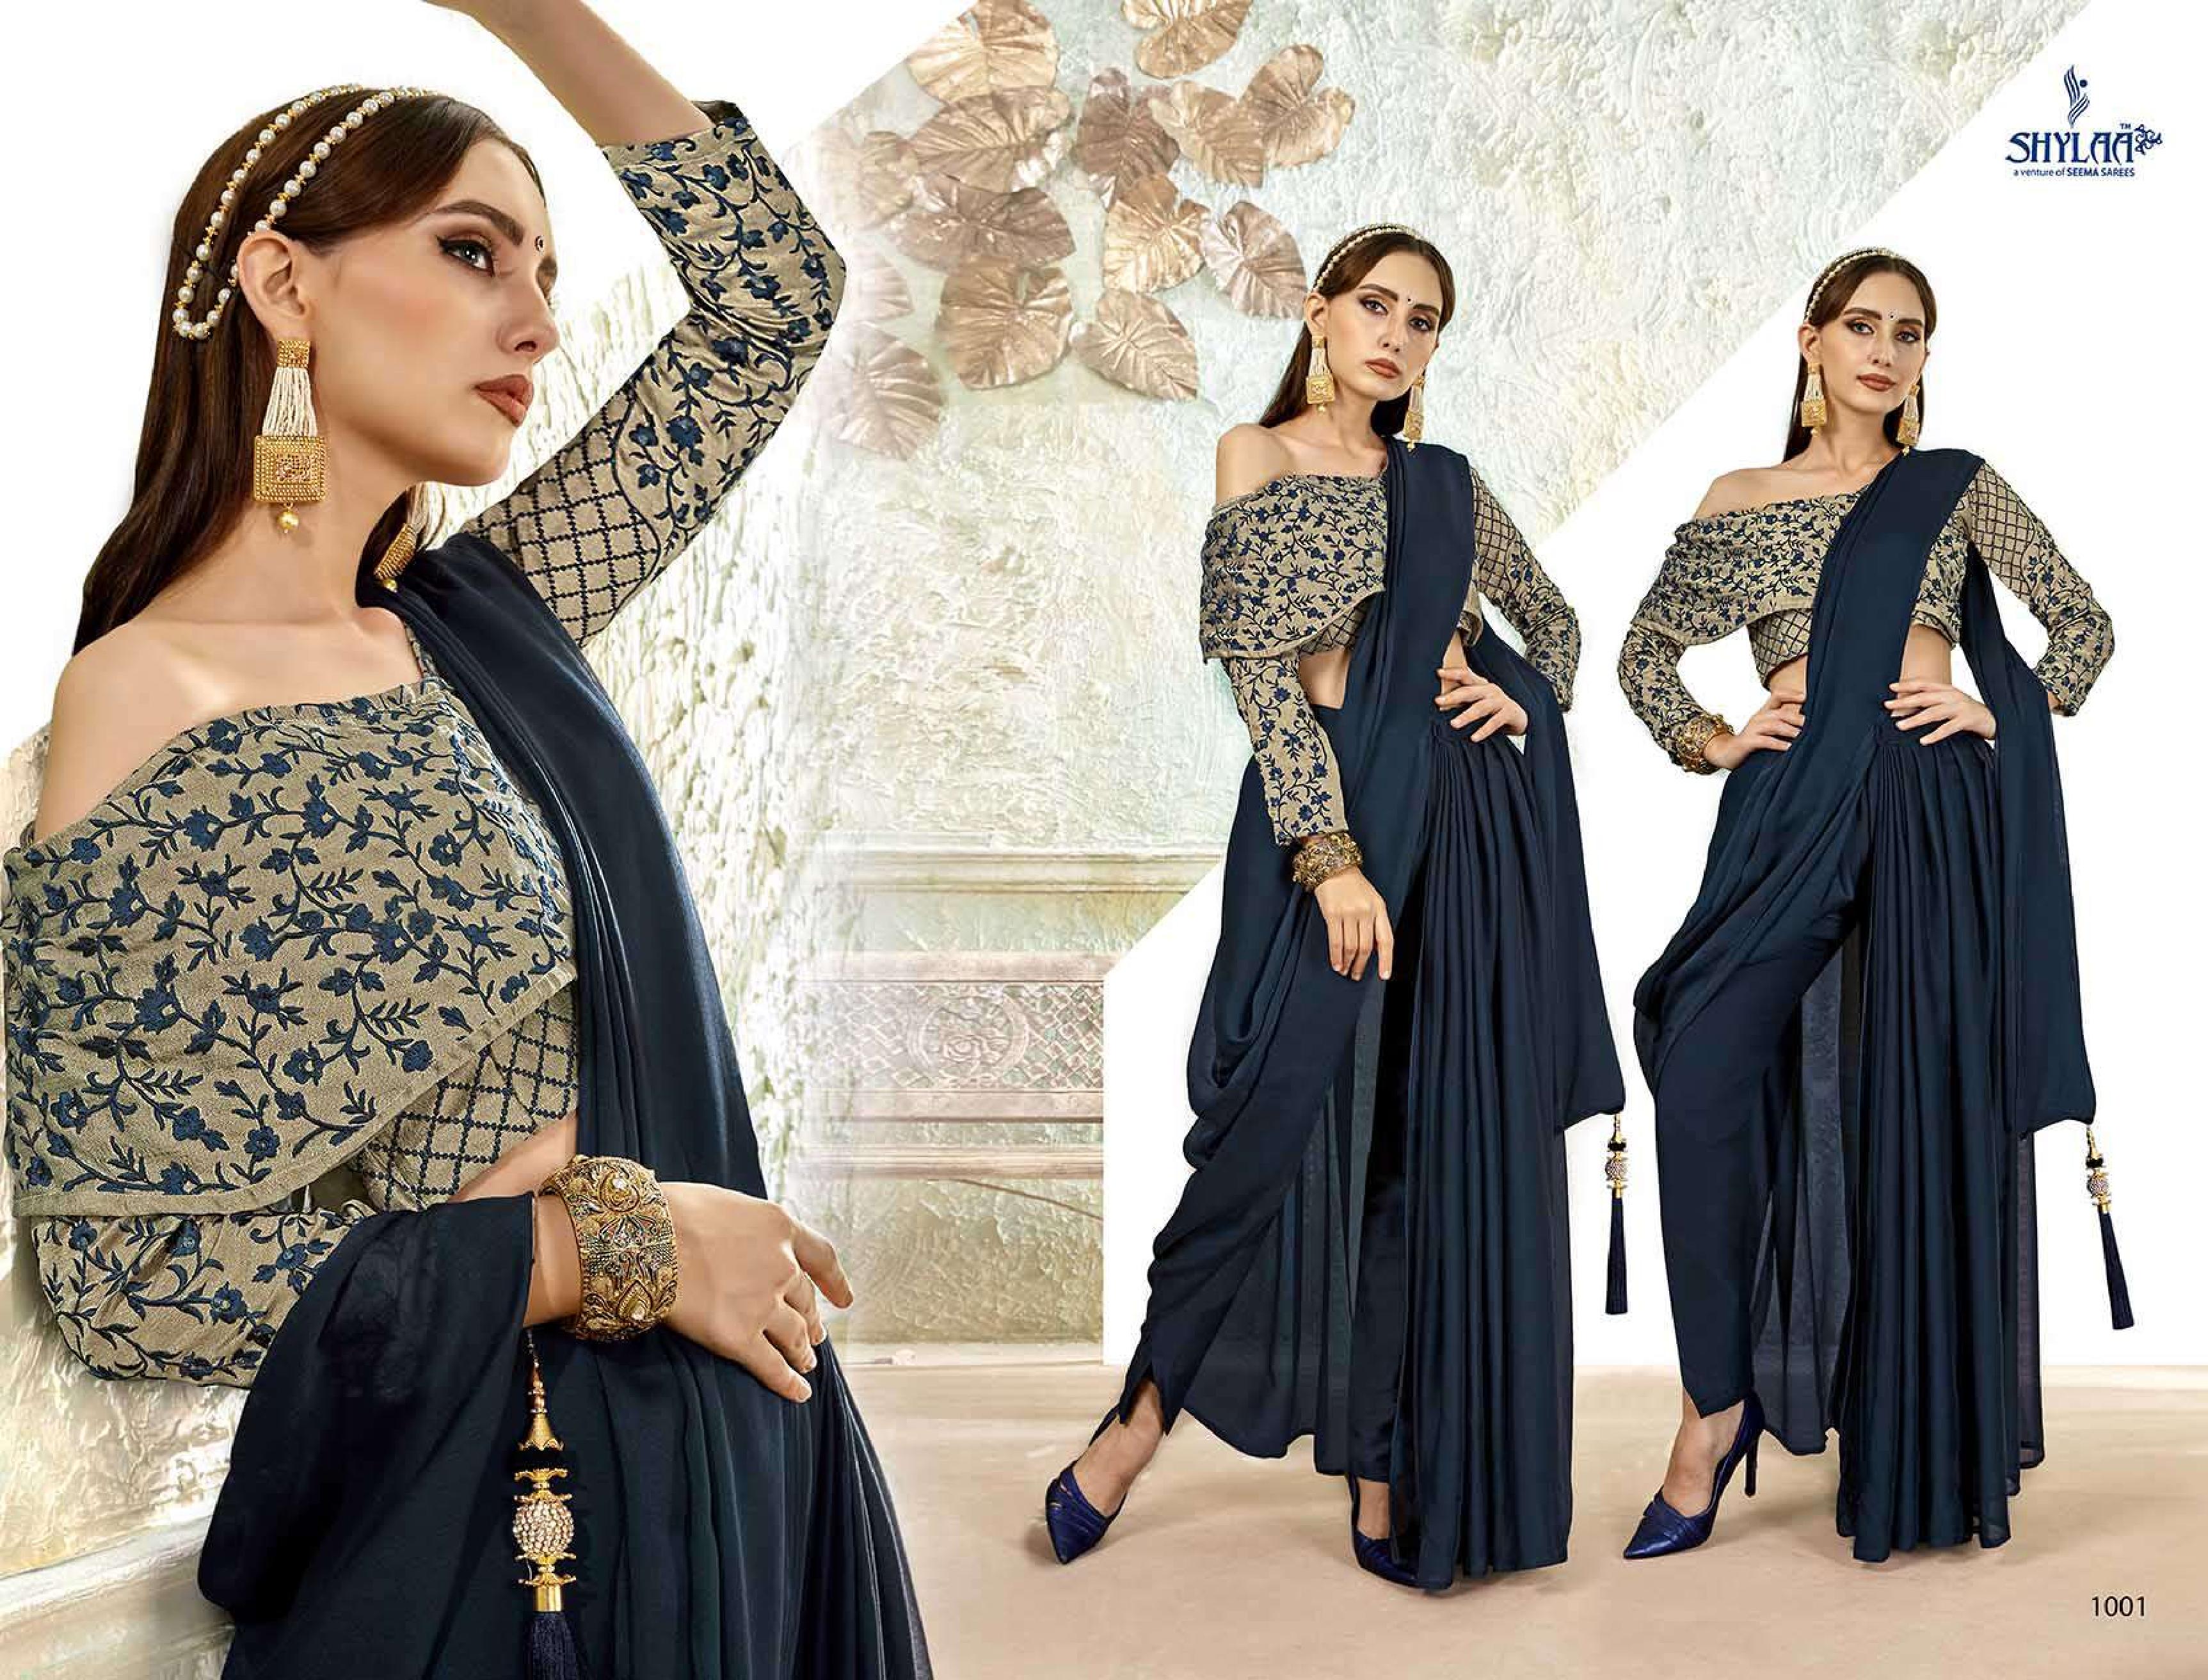 Shylaa the pant saree beautifull and modern Trendy pant Sarees